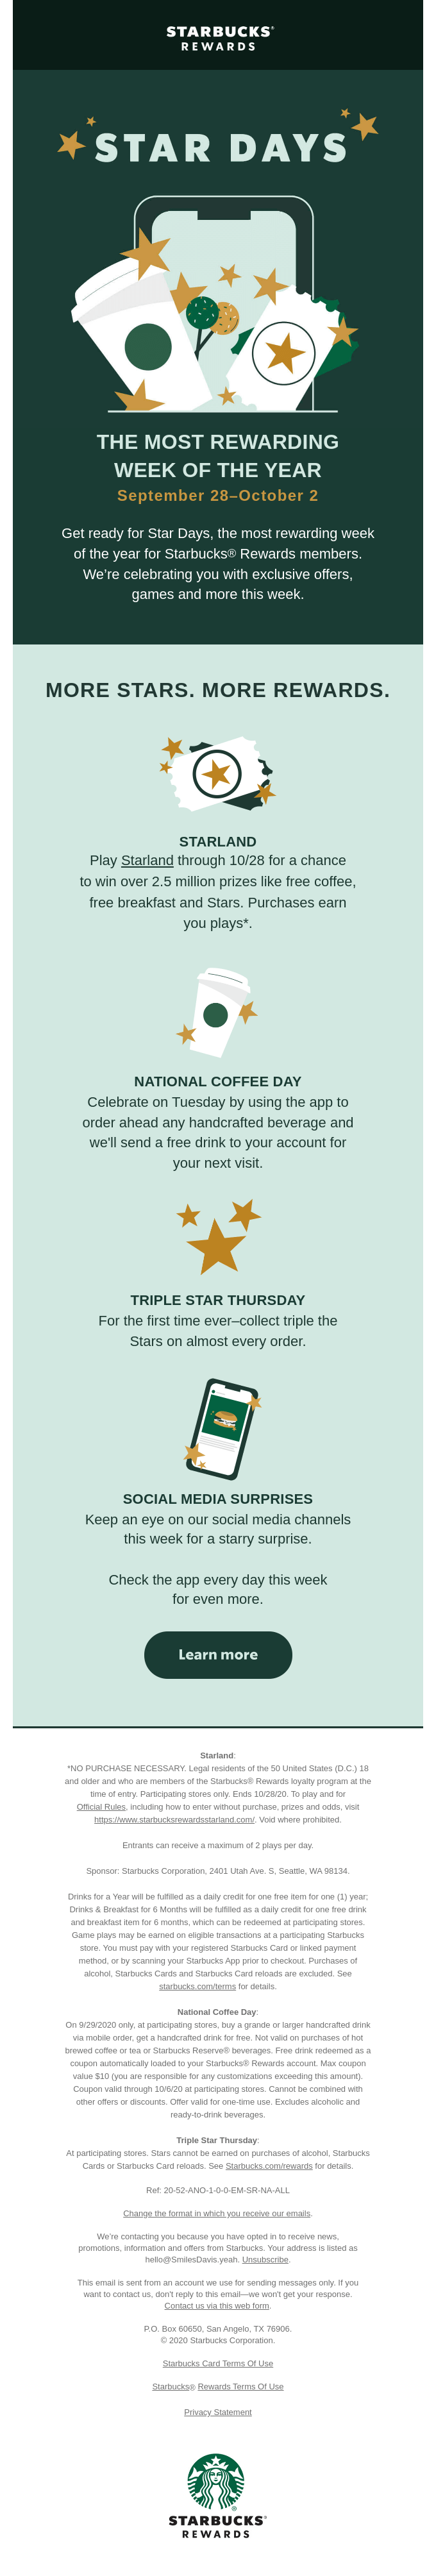 Mark your calendars for Star Days - Starbucks Email Newsletter